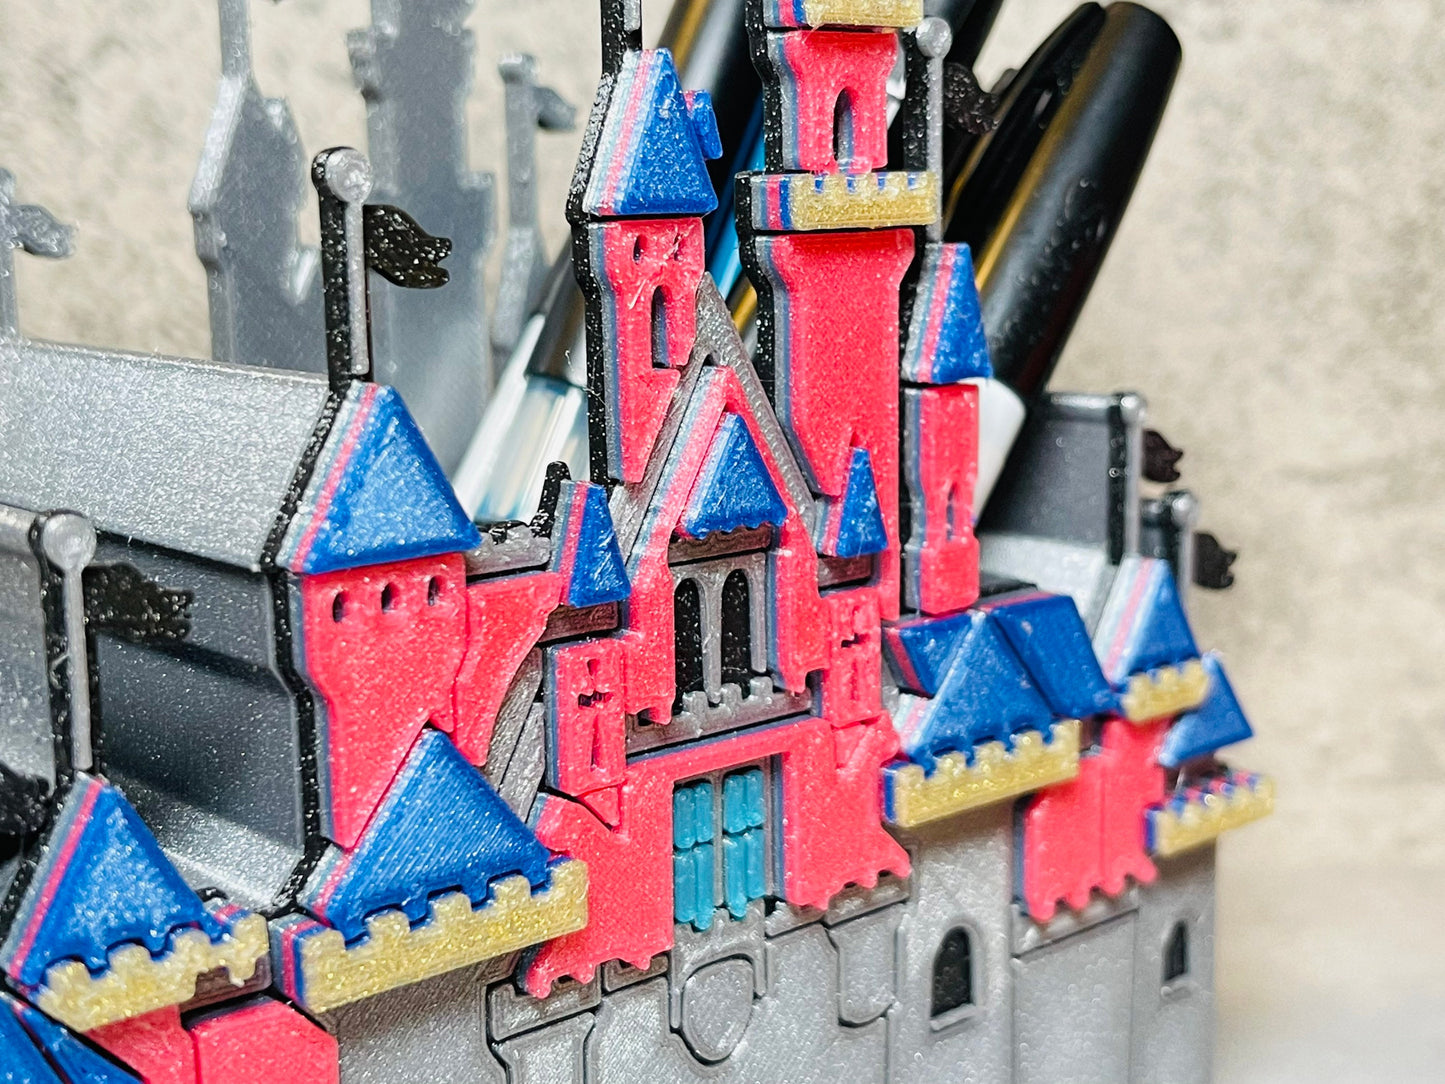 
                  
                    Grand Castle Pen Holder
                  
                